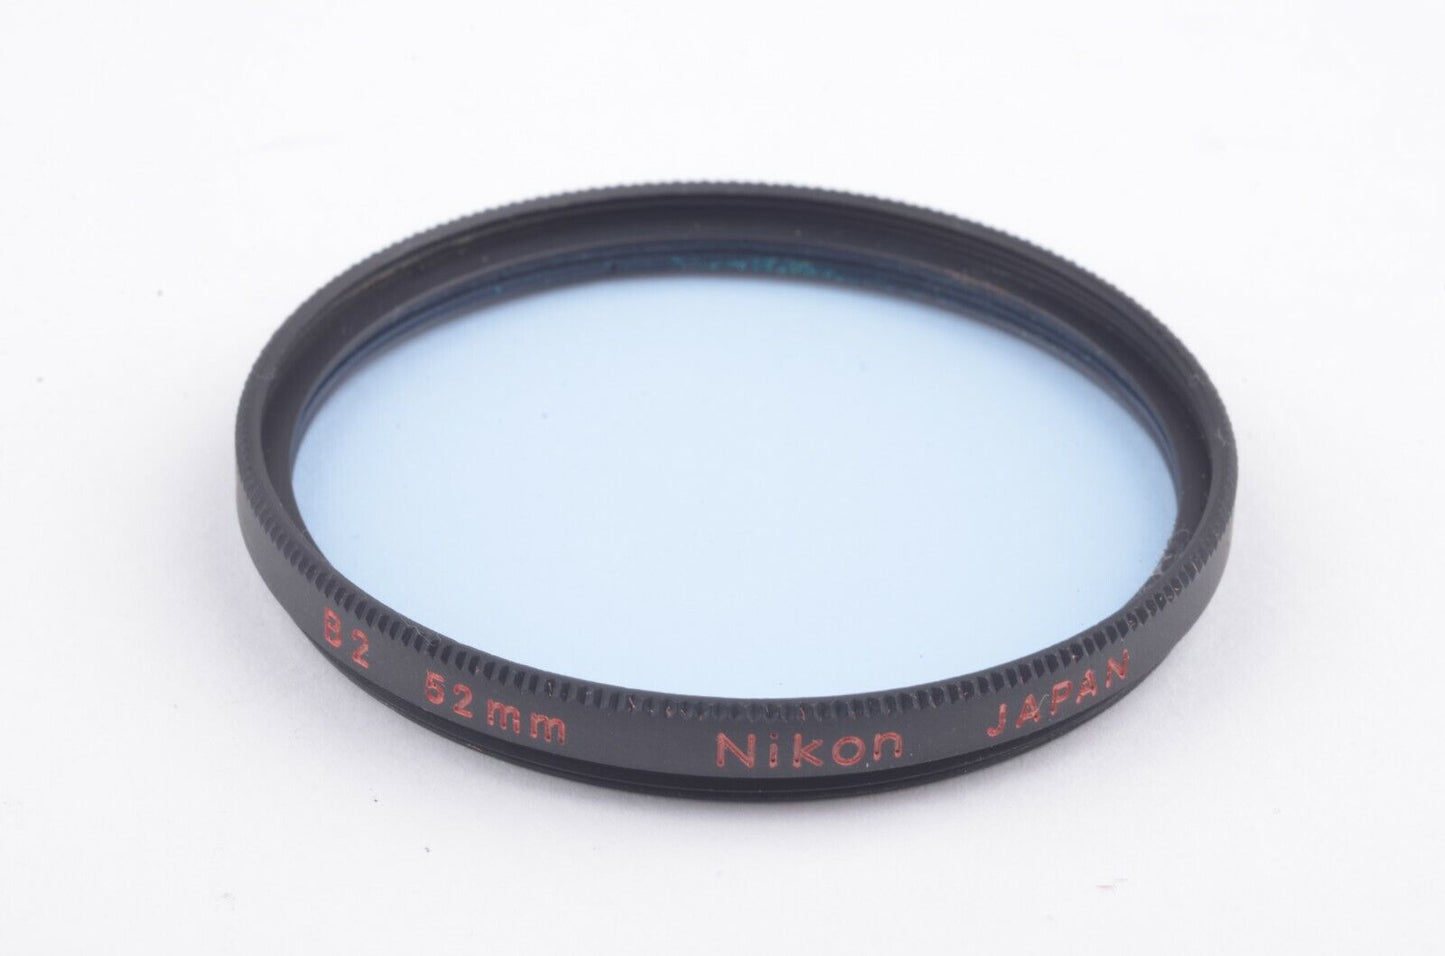 MINT- BOXED NIKON B2 LIGHT BLUE 52mm FILTER IN JEWEL BOX